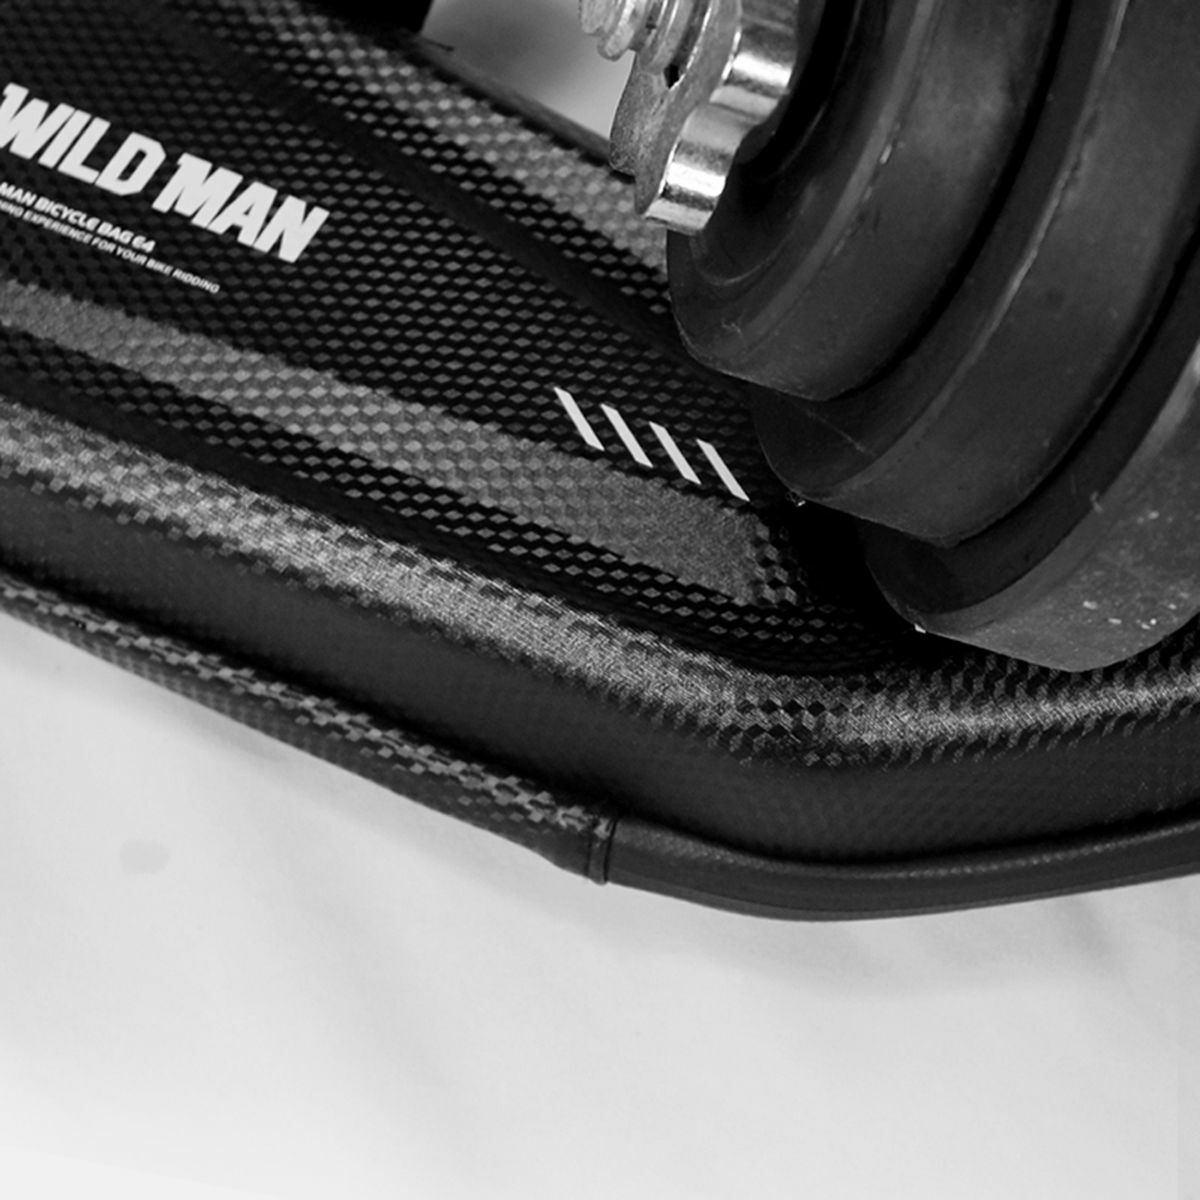 Kép 3/5 - WILDMAN Bicycle Bag E4 váz alá rögzíthető merevfalú, vízálló táska, 1.5L, fekete WILDMAN-E4-15L